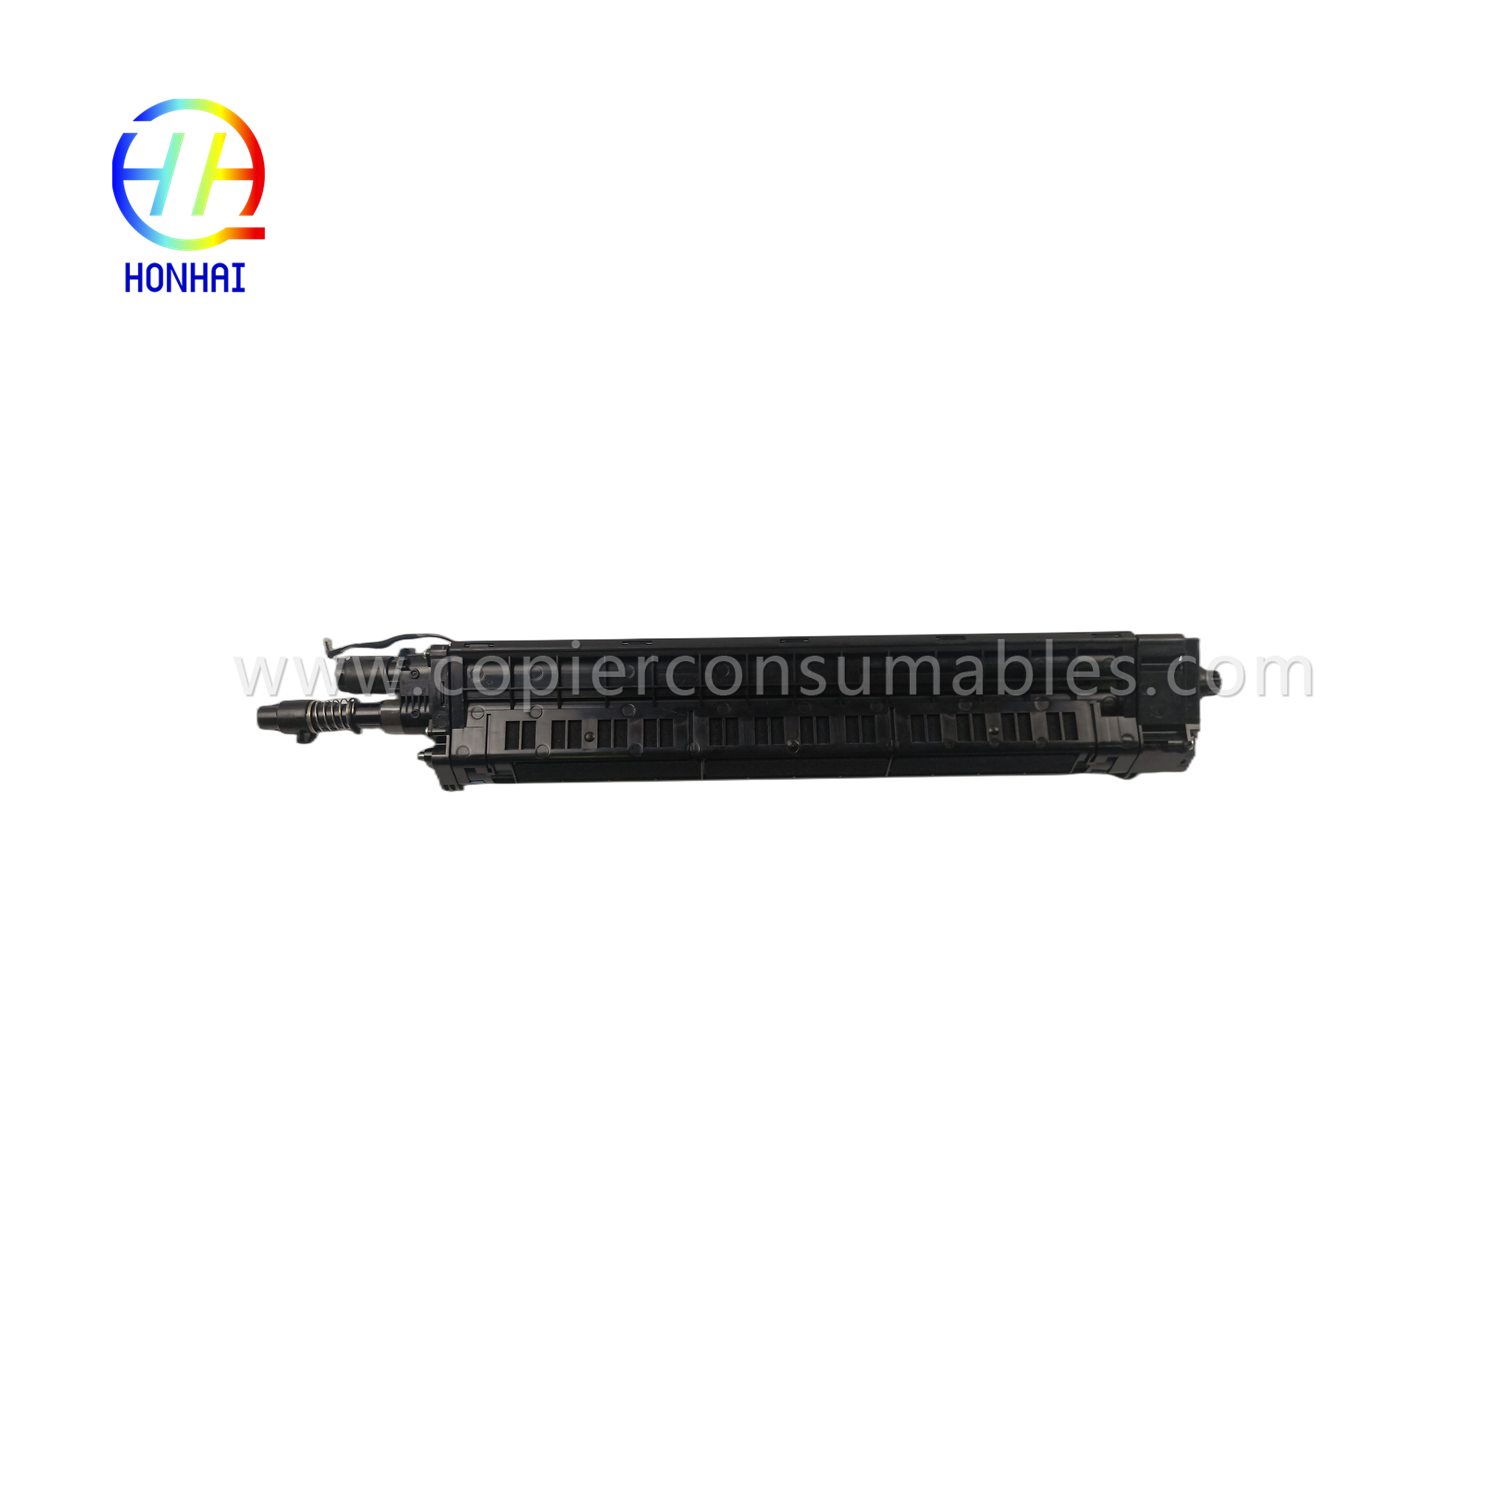 Igice cyabatezimbere kuri Samsung JC96-12519A Cyan X7400 X7500 X7600 Sl-x7400 Sl-x7500 Sl-x7600 Iterambere Cartridge